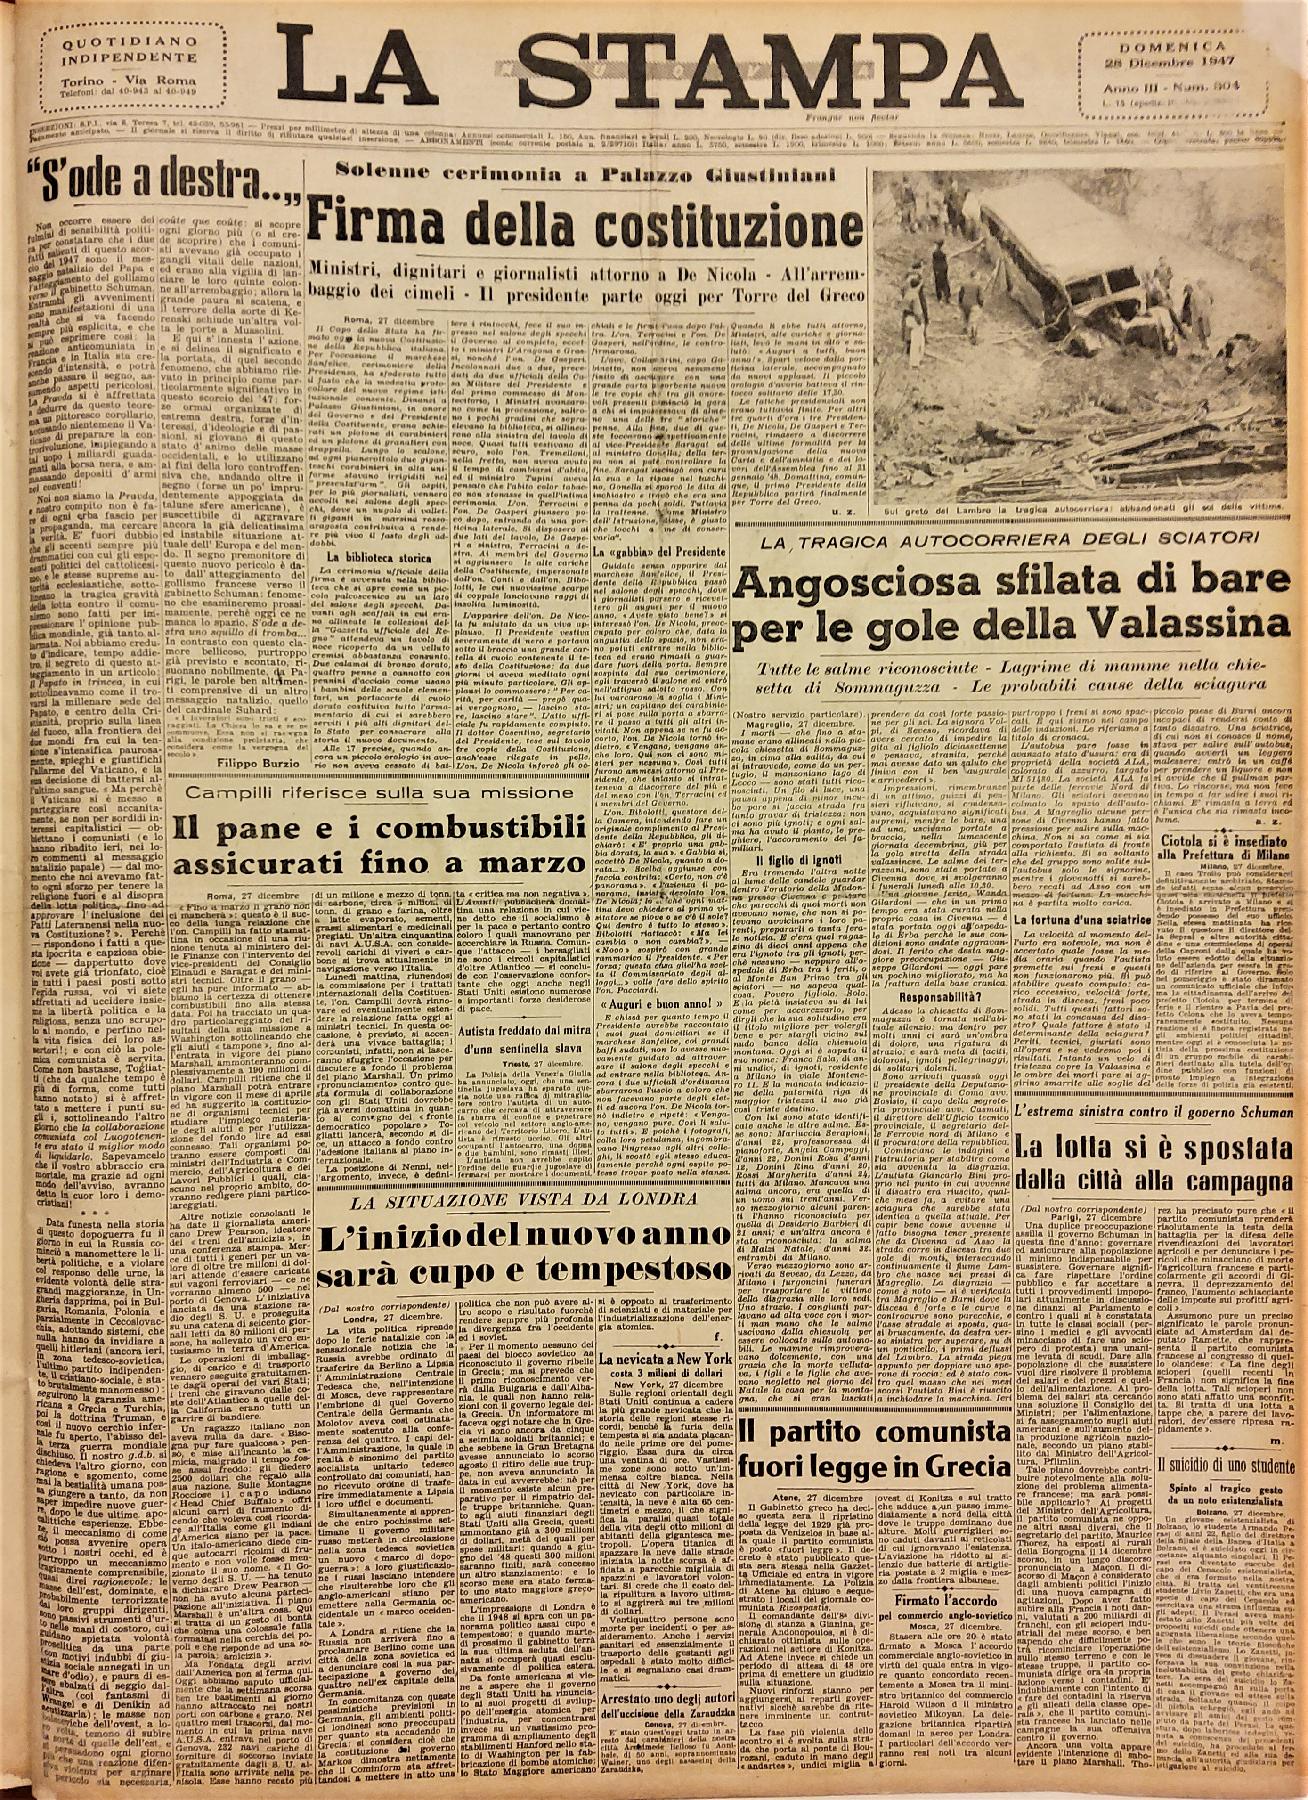 28 dicembre 1947 - Prima pagina del quotidiano "La Stampa"